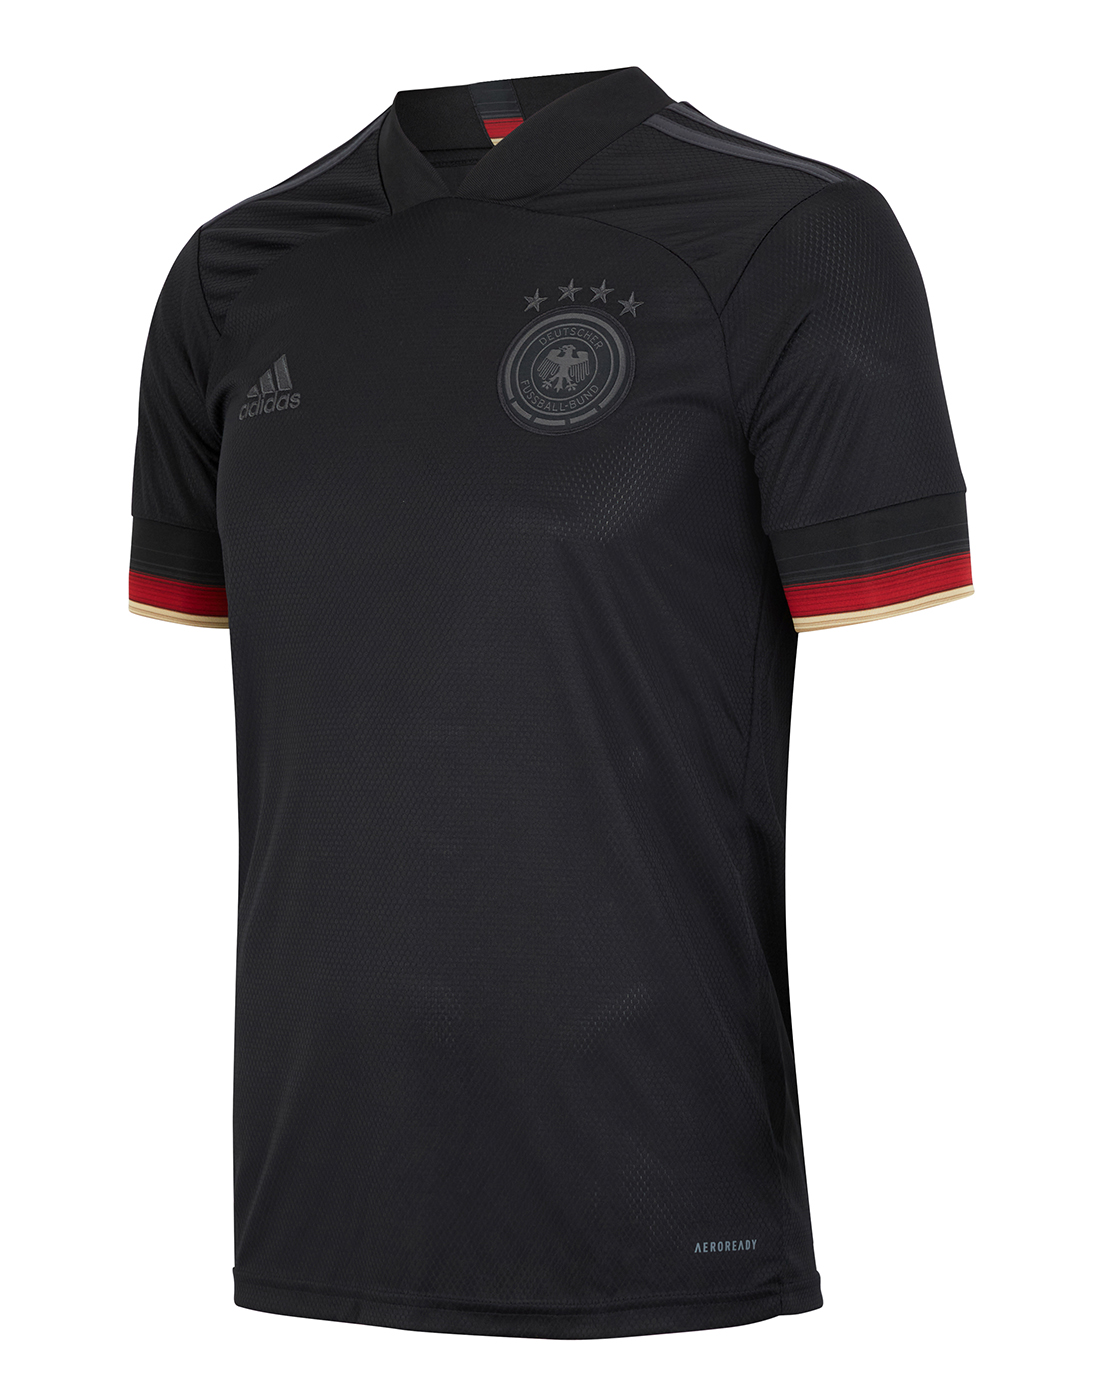 ابر تخريم Men 2020-2021 European Cup Germany away black 15 Adidas Soccer Jerseys ليز ليمون وشطه